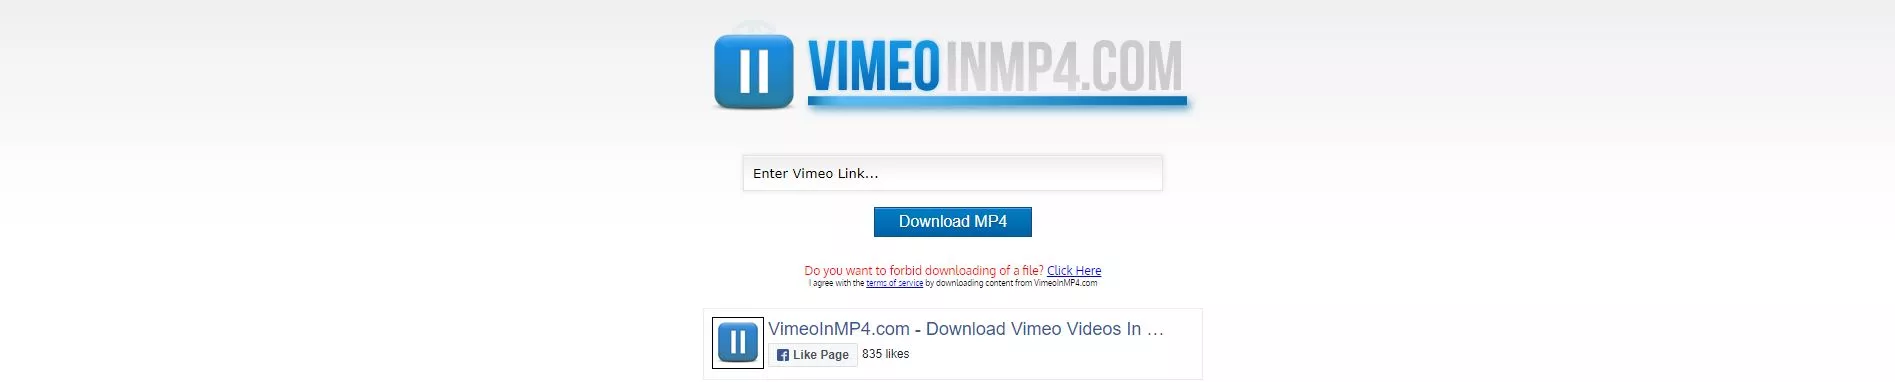 VimeoInMp4 Download Vimeo Videos